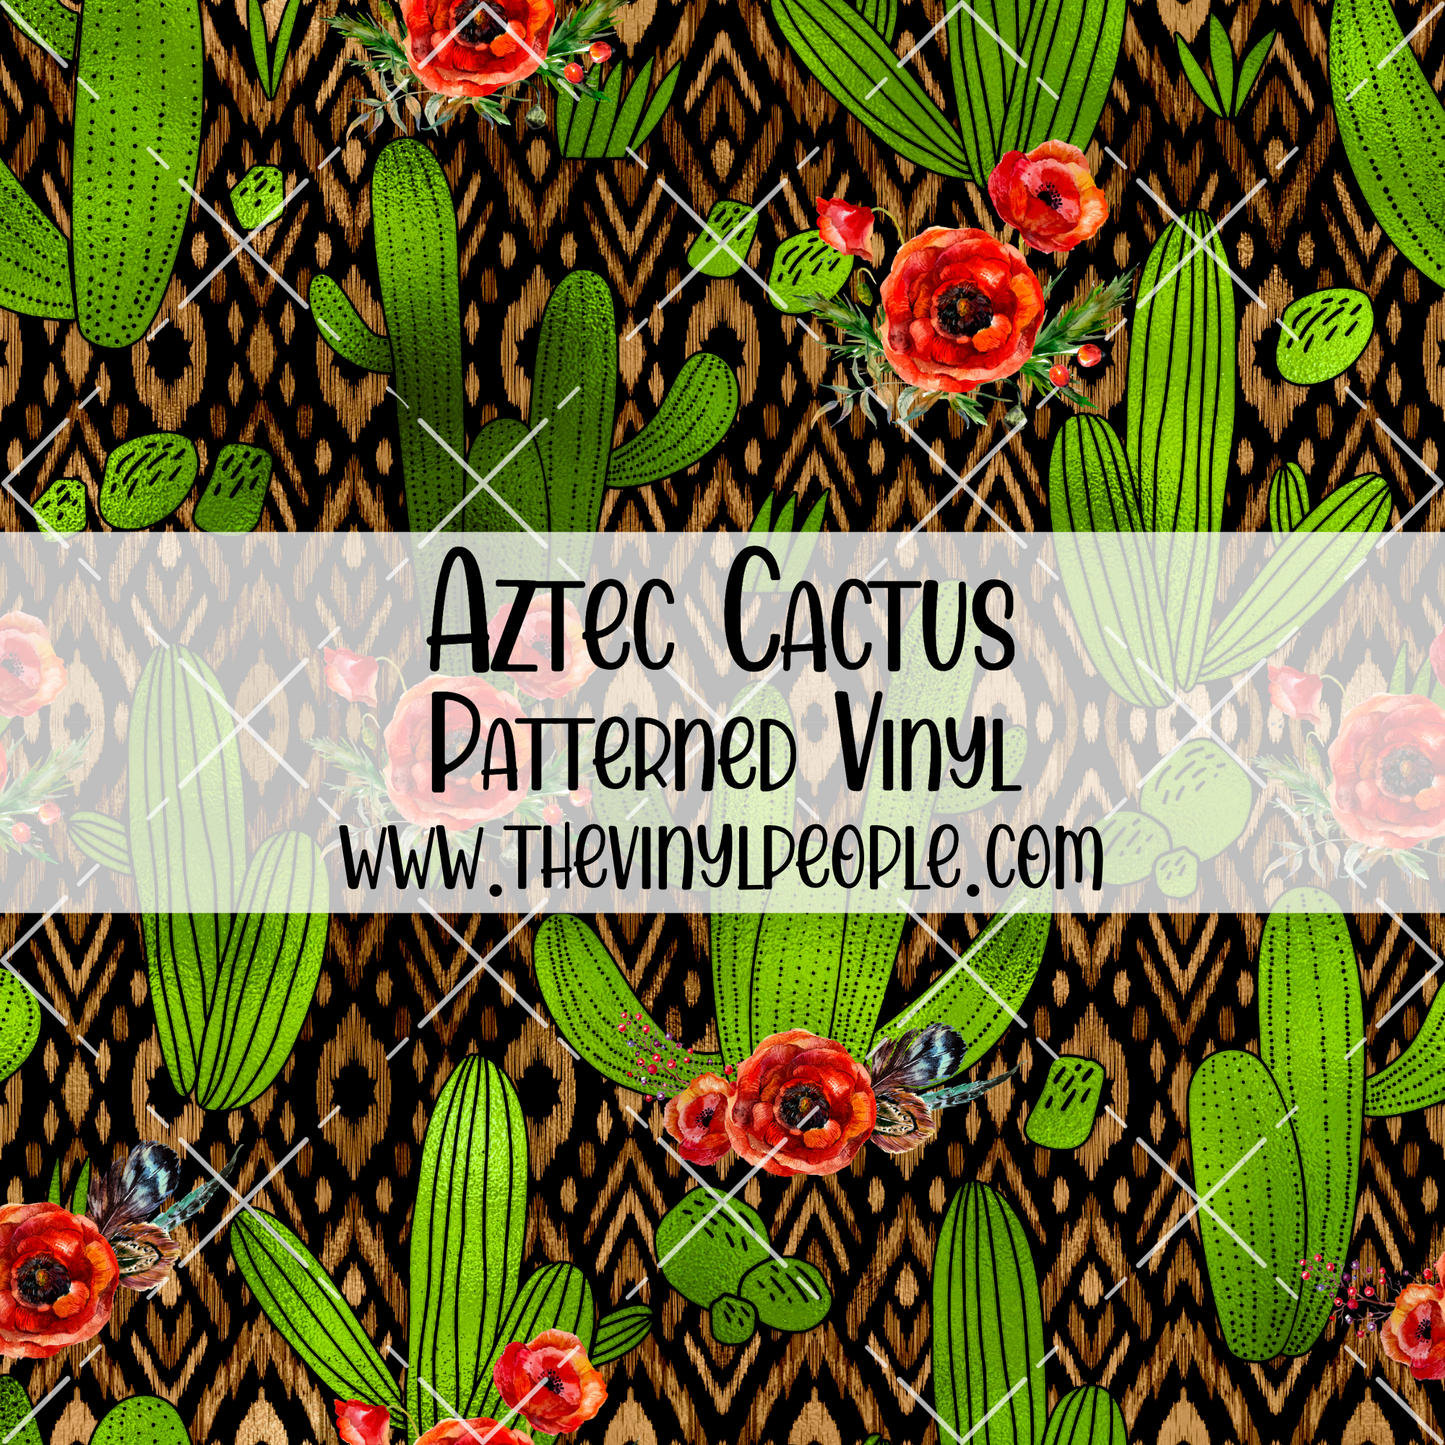 Aztec Cactus Patterned Vinyl